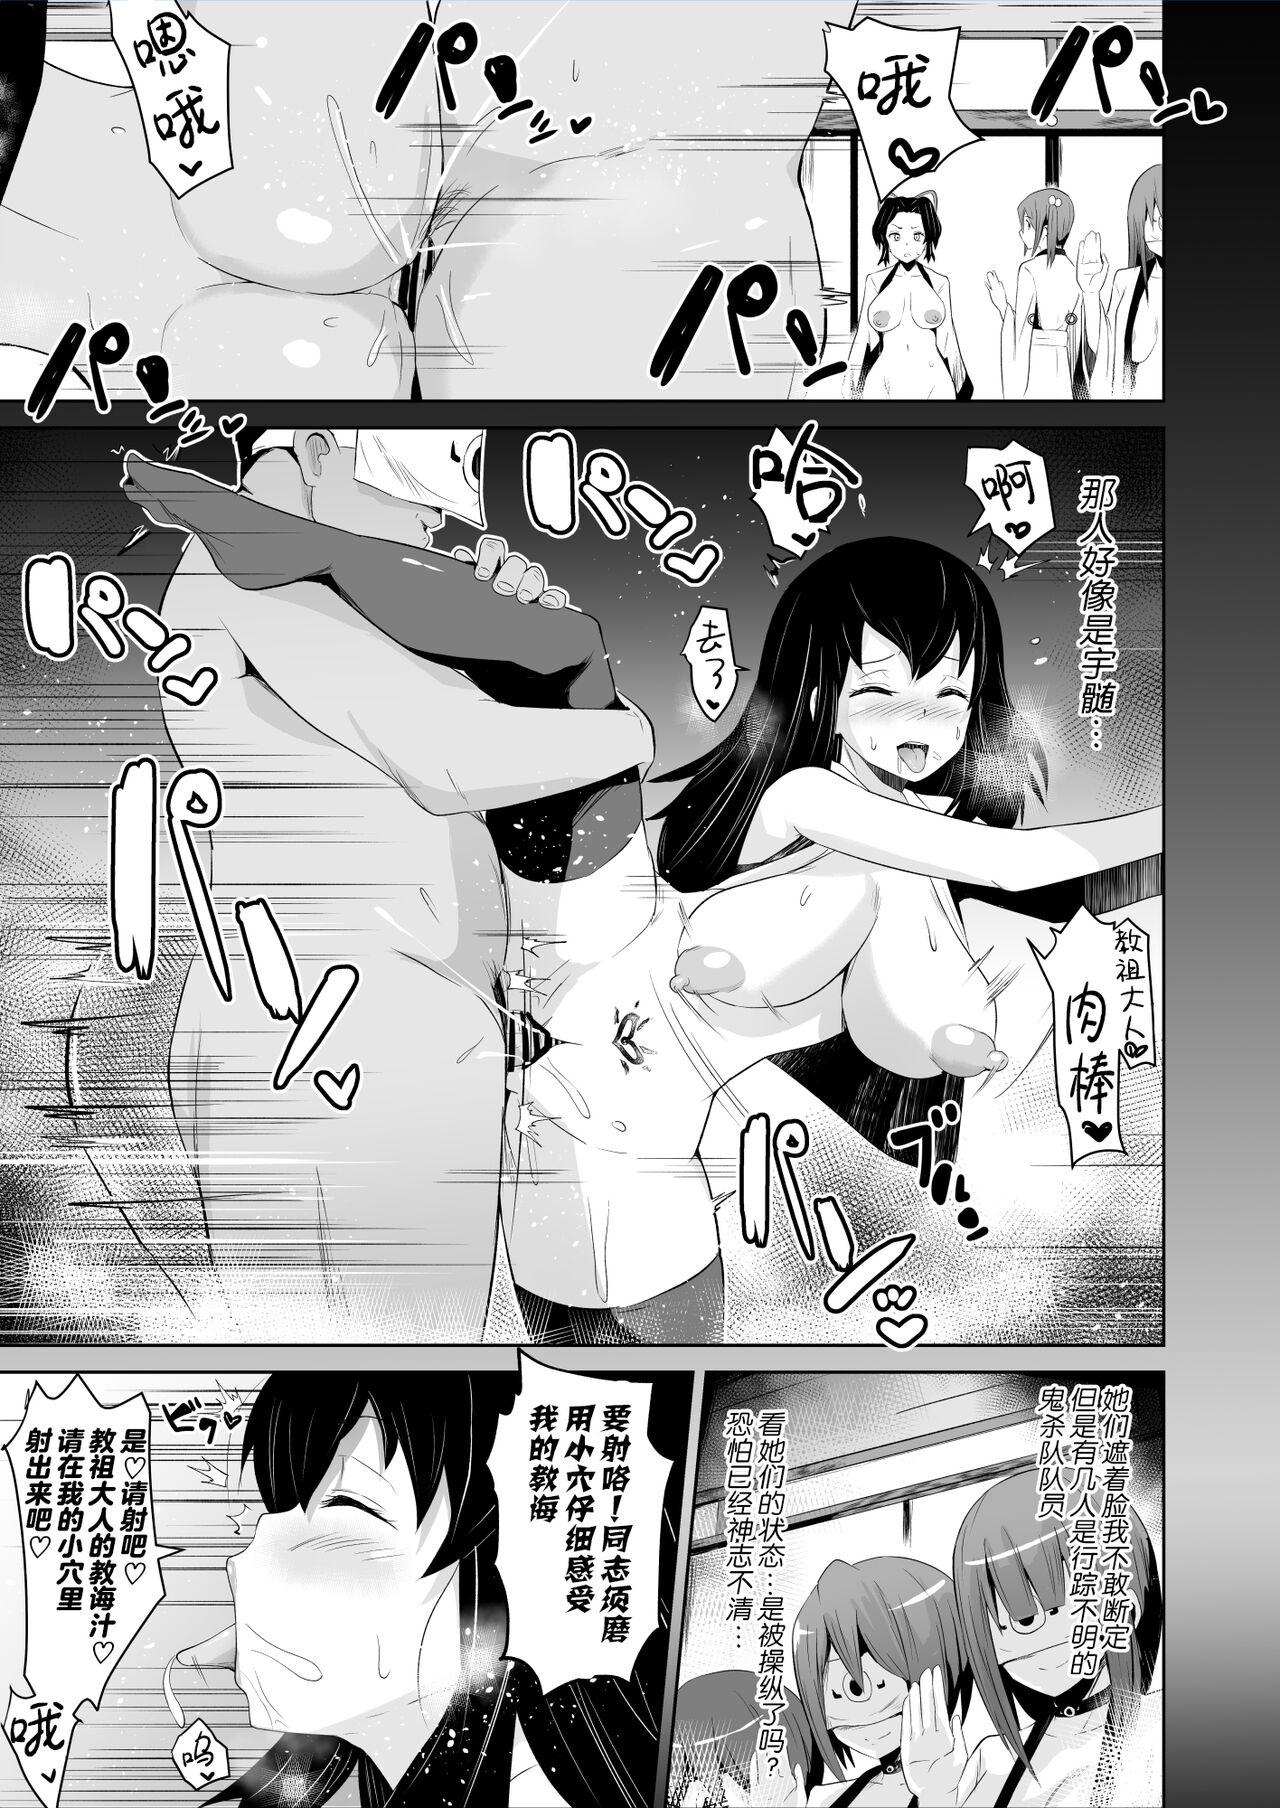 Woman Datsumetsu Shinobu Edition - Kimetsu no yaiba | demon slayer Making Love Porn - Page 6